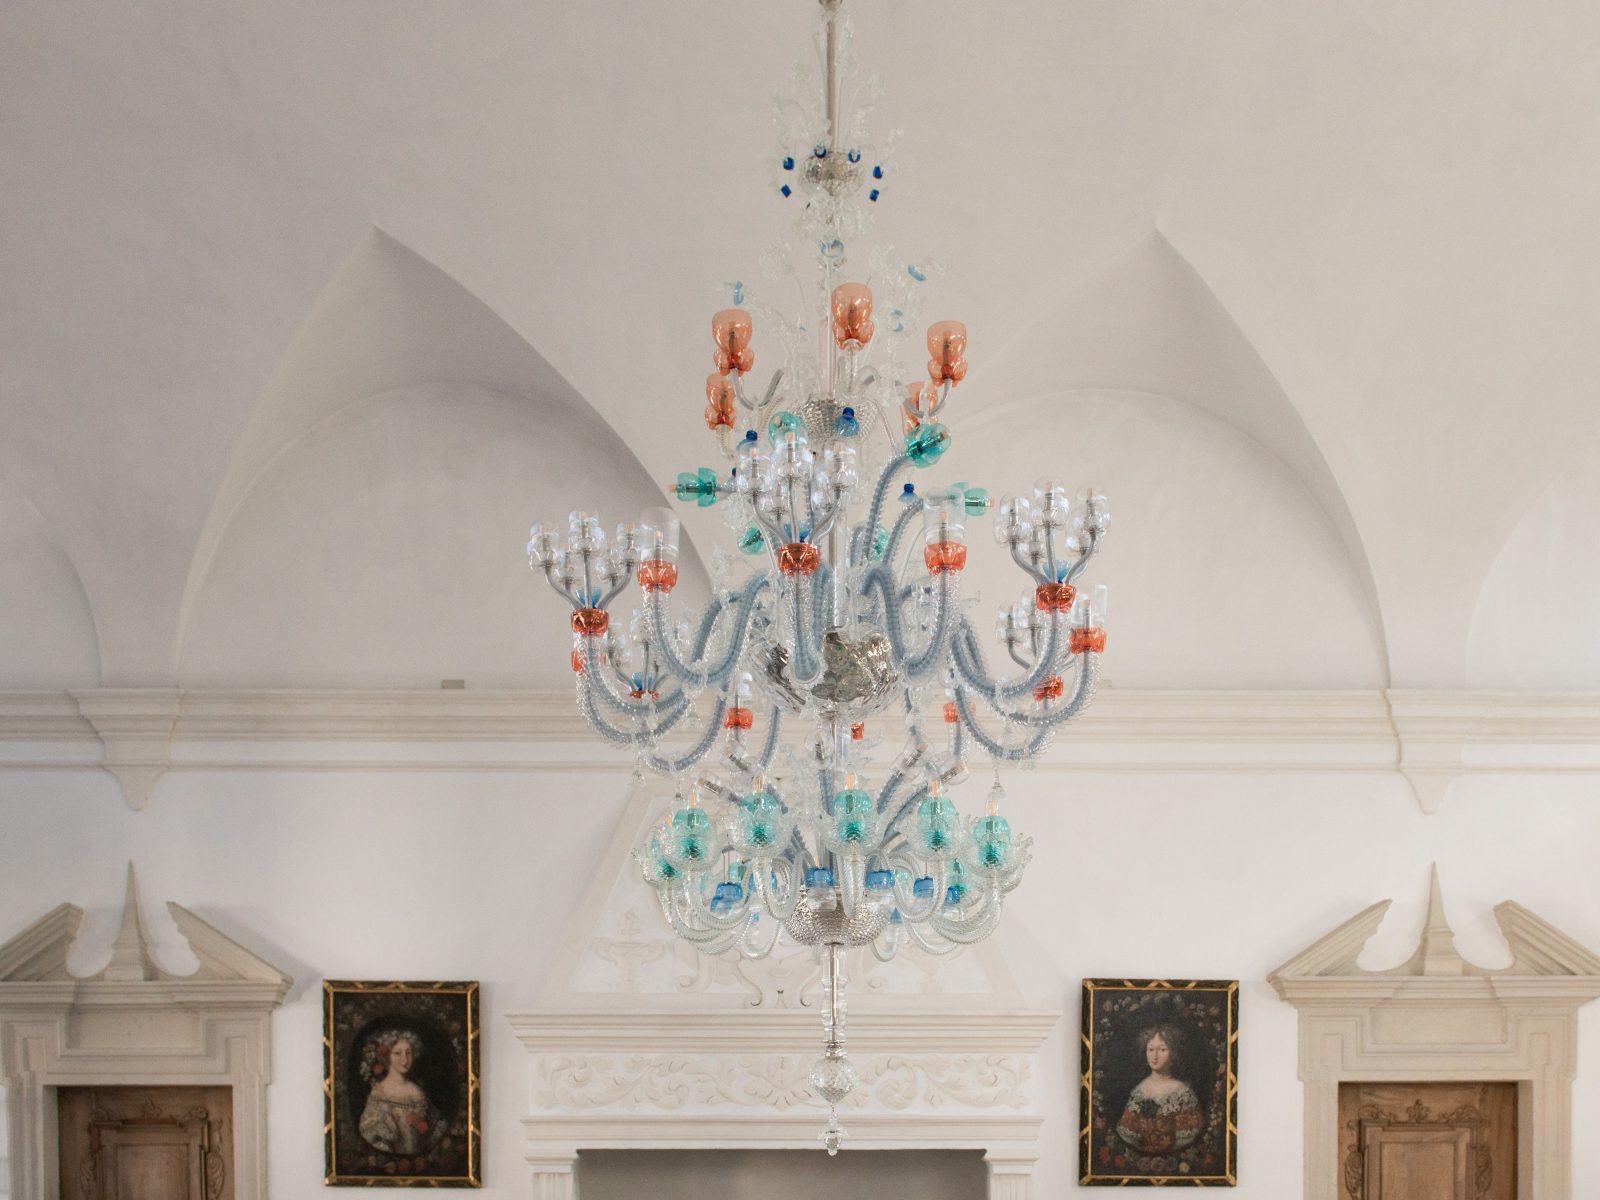 L’oggetto luminoso “WaltRose”, creato dall’artista Manfred Alois Mayr, si trova a Palazzo Rottenbuch.